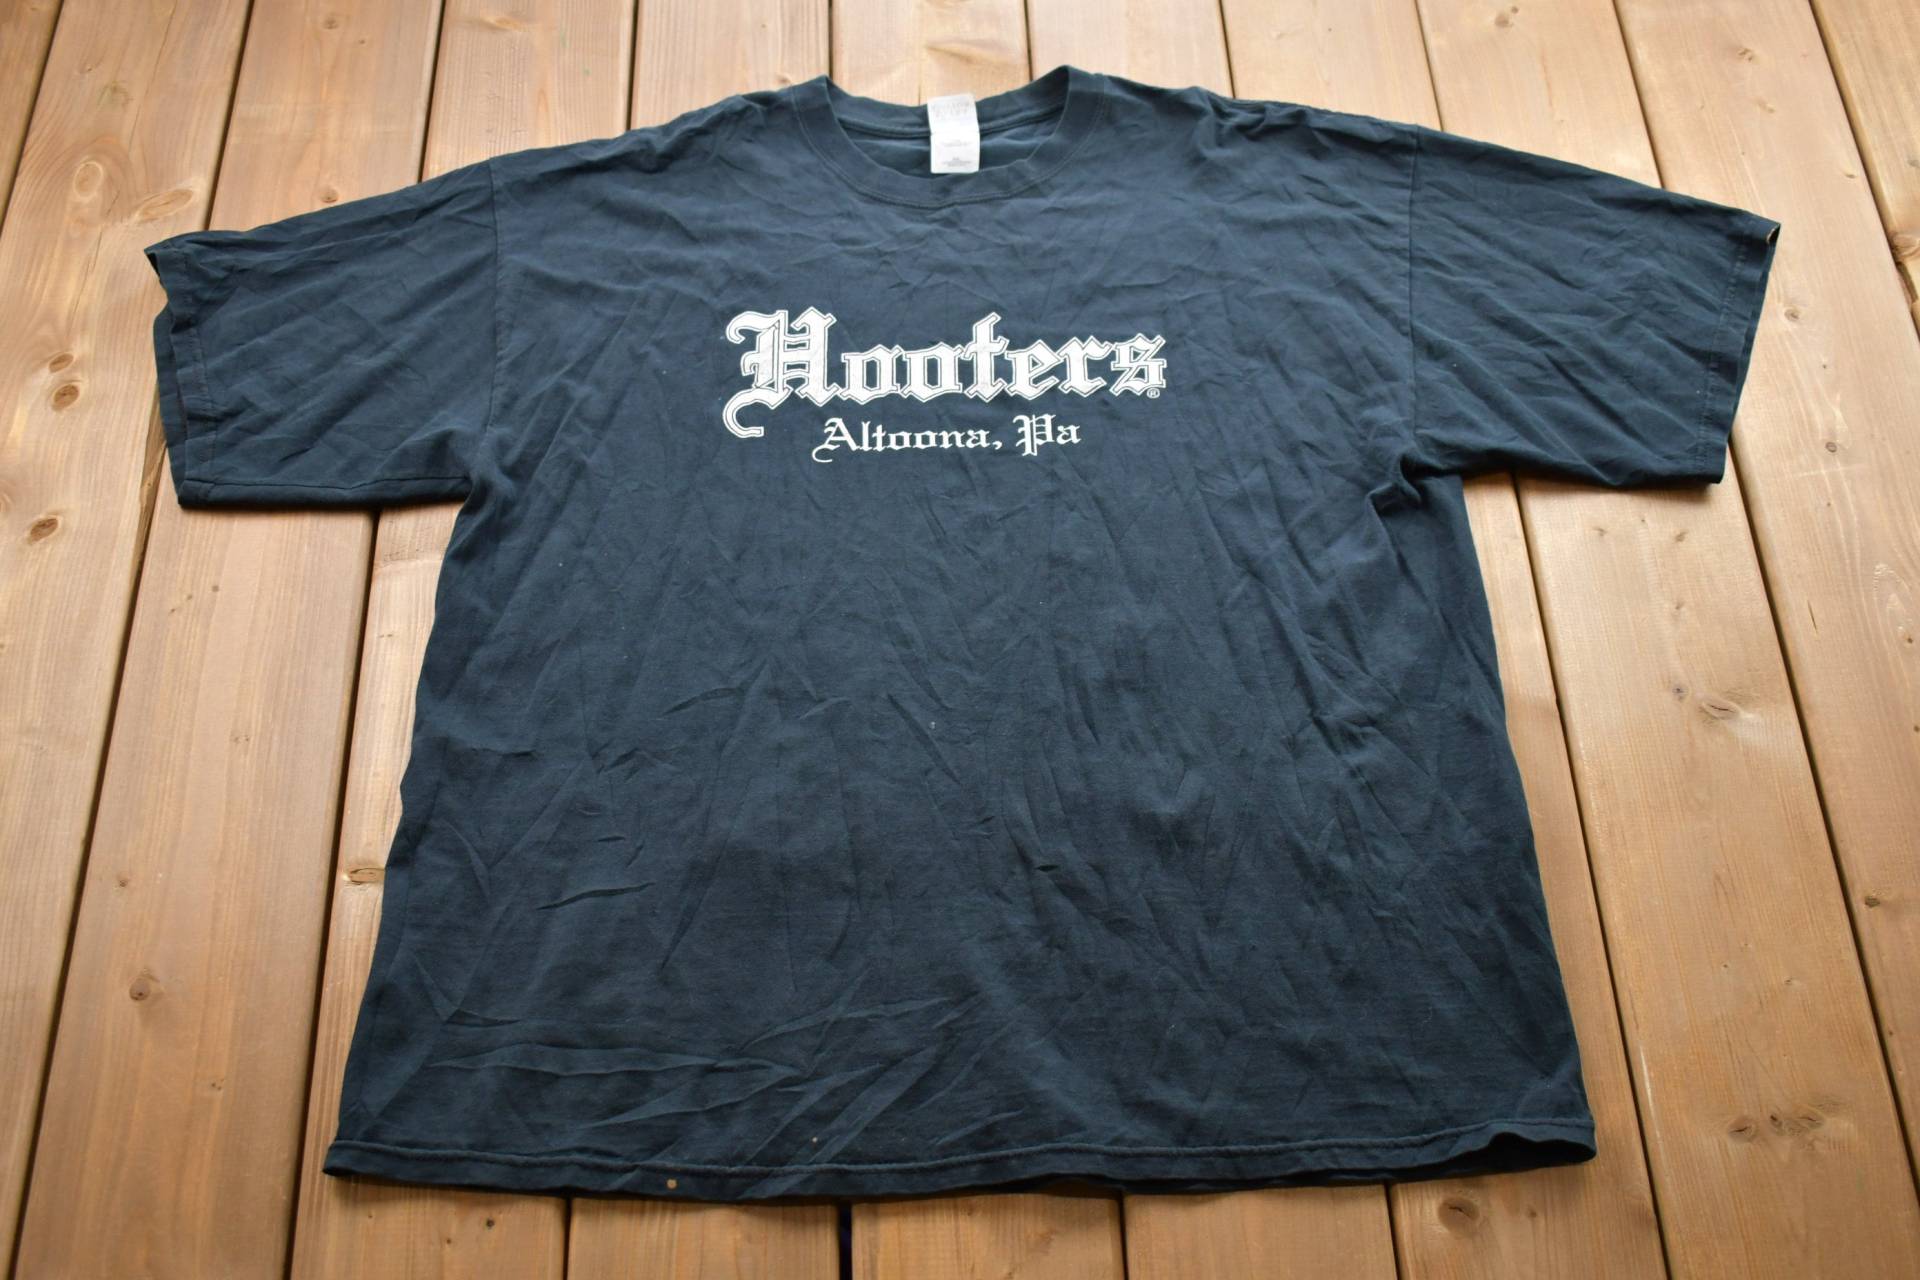 Vintage 1990Er Hooters Grafik T-Shirt/80Er 90Er Jahre Streetwear Retro Style Single Stitch Made in Usa von Lostboysvintage